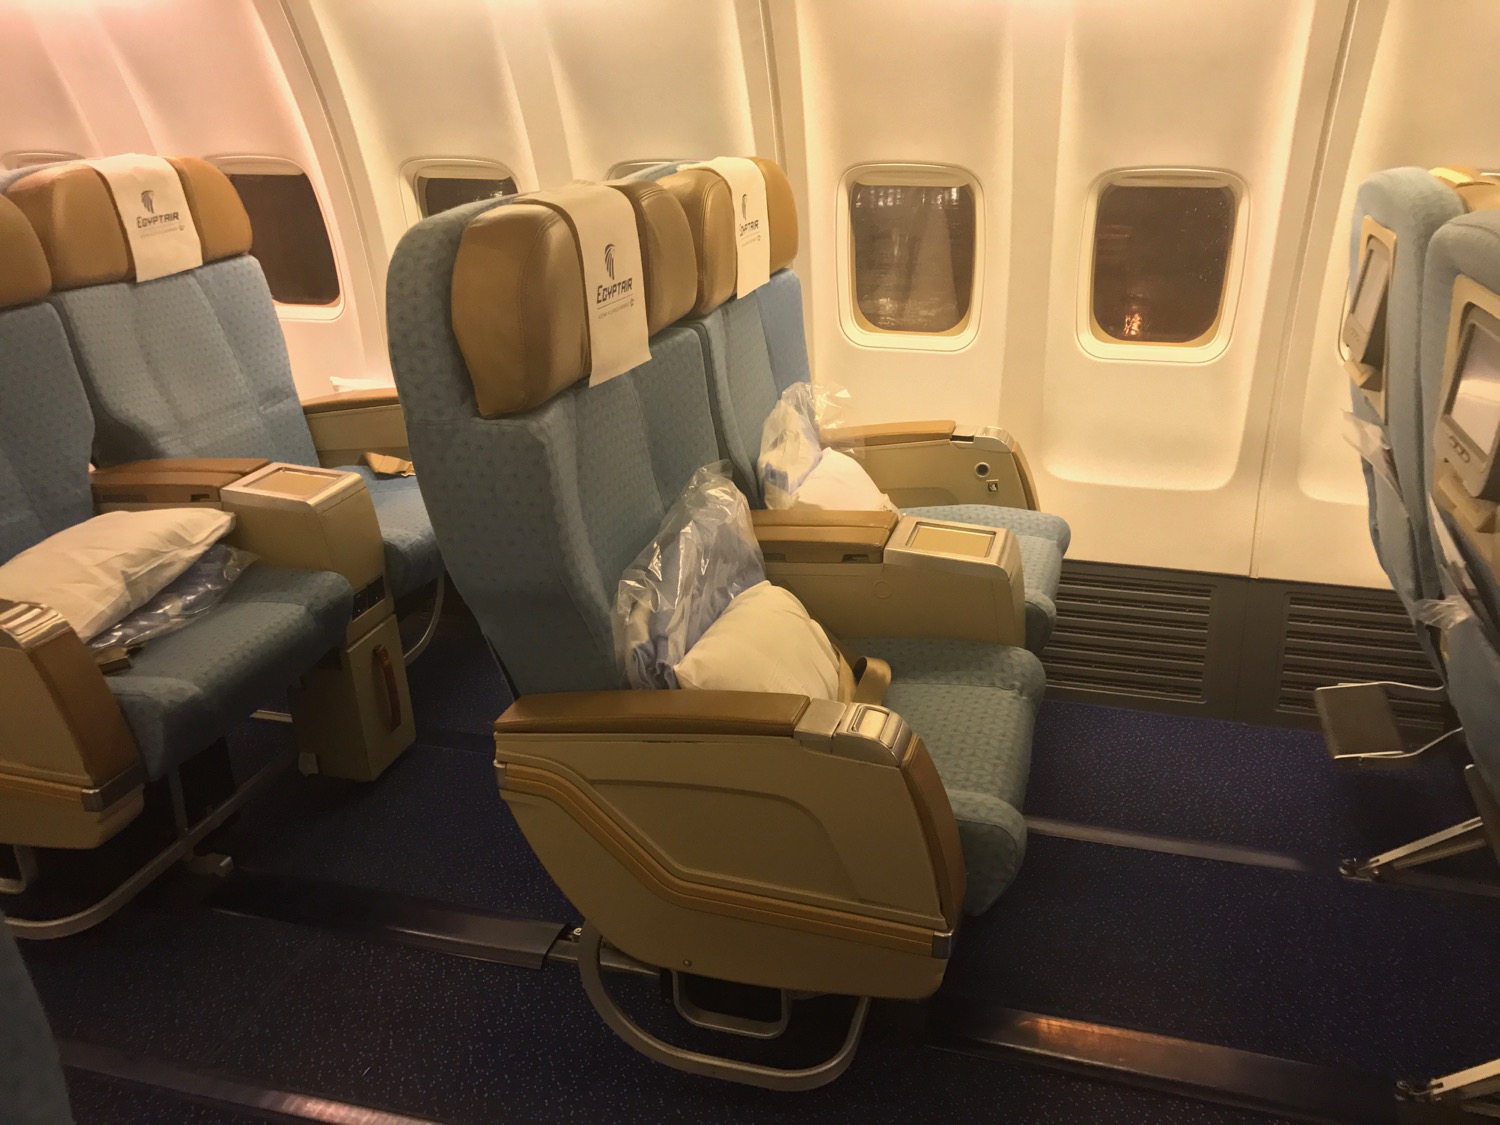 EgpytAir Cairo to Beirut 737-800 Business Class - 30